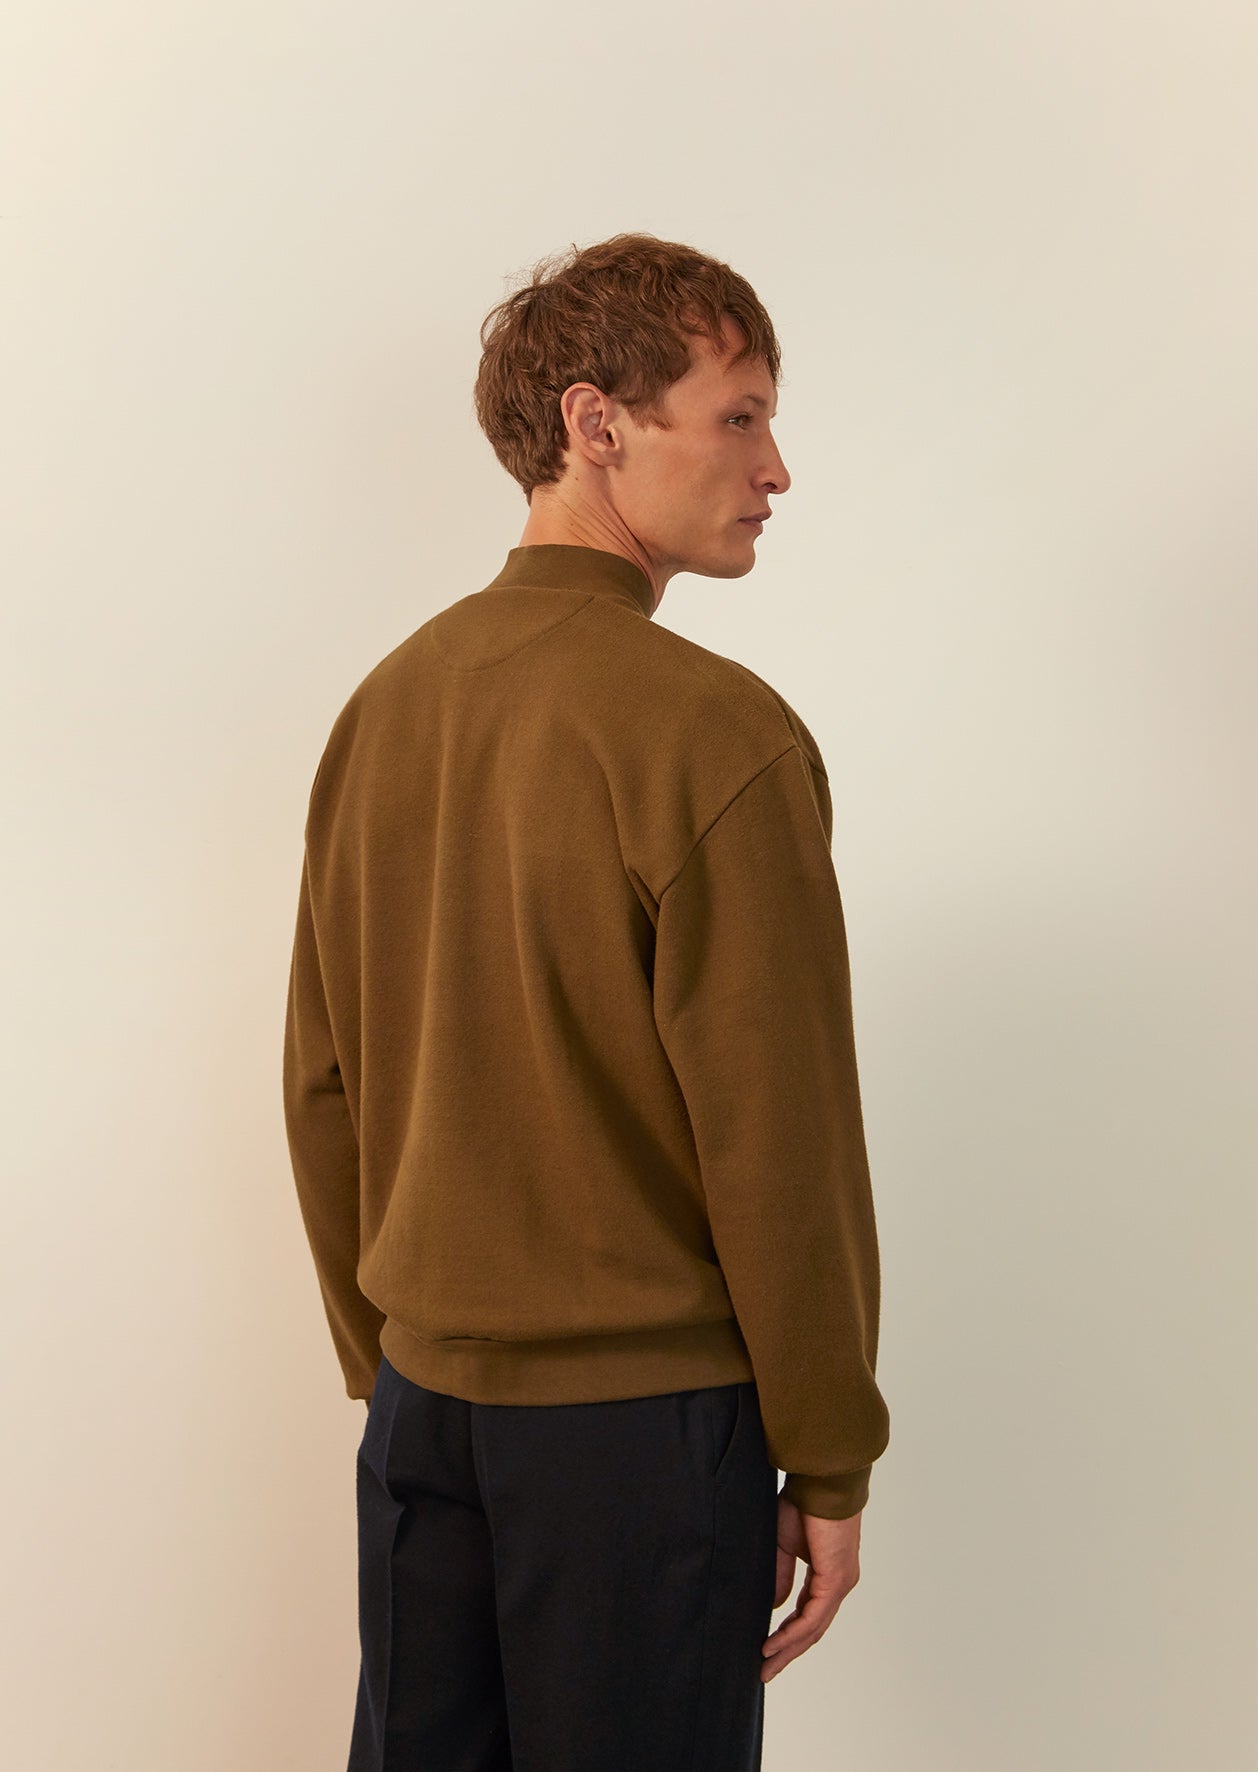 De Bonne Facture - Cyclist sweatshirt - Japanese cotton fleece - Olive